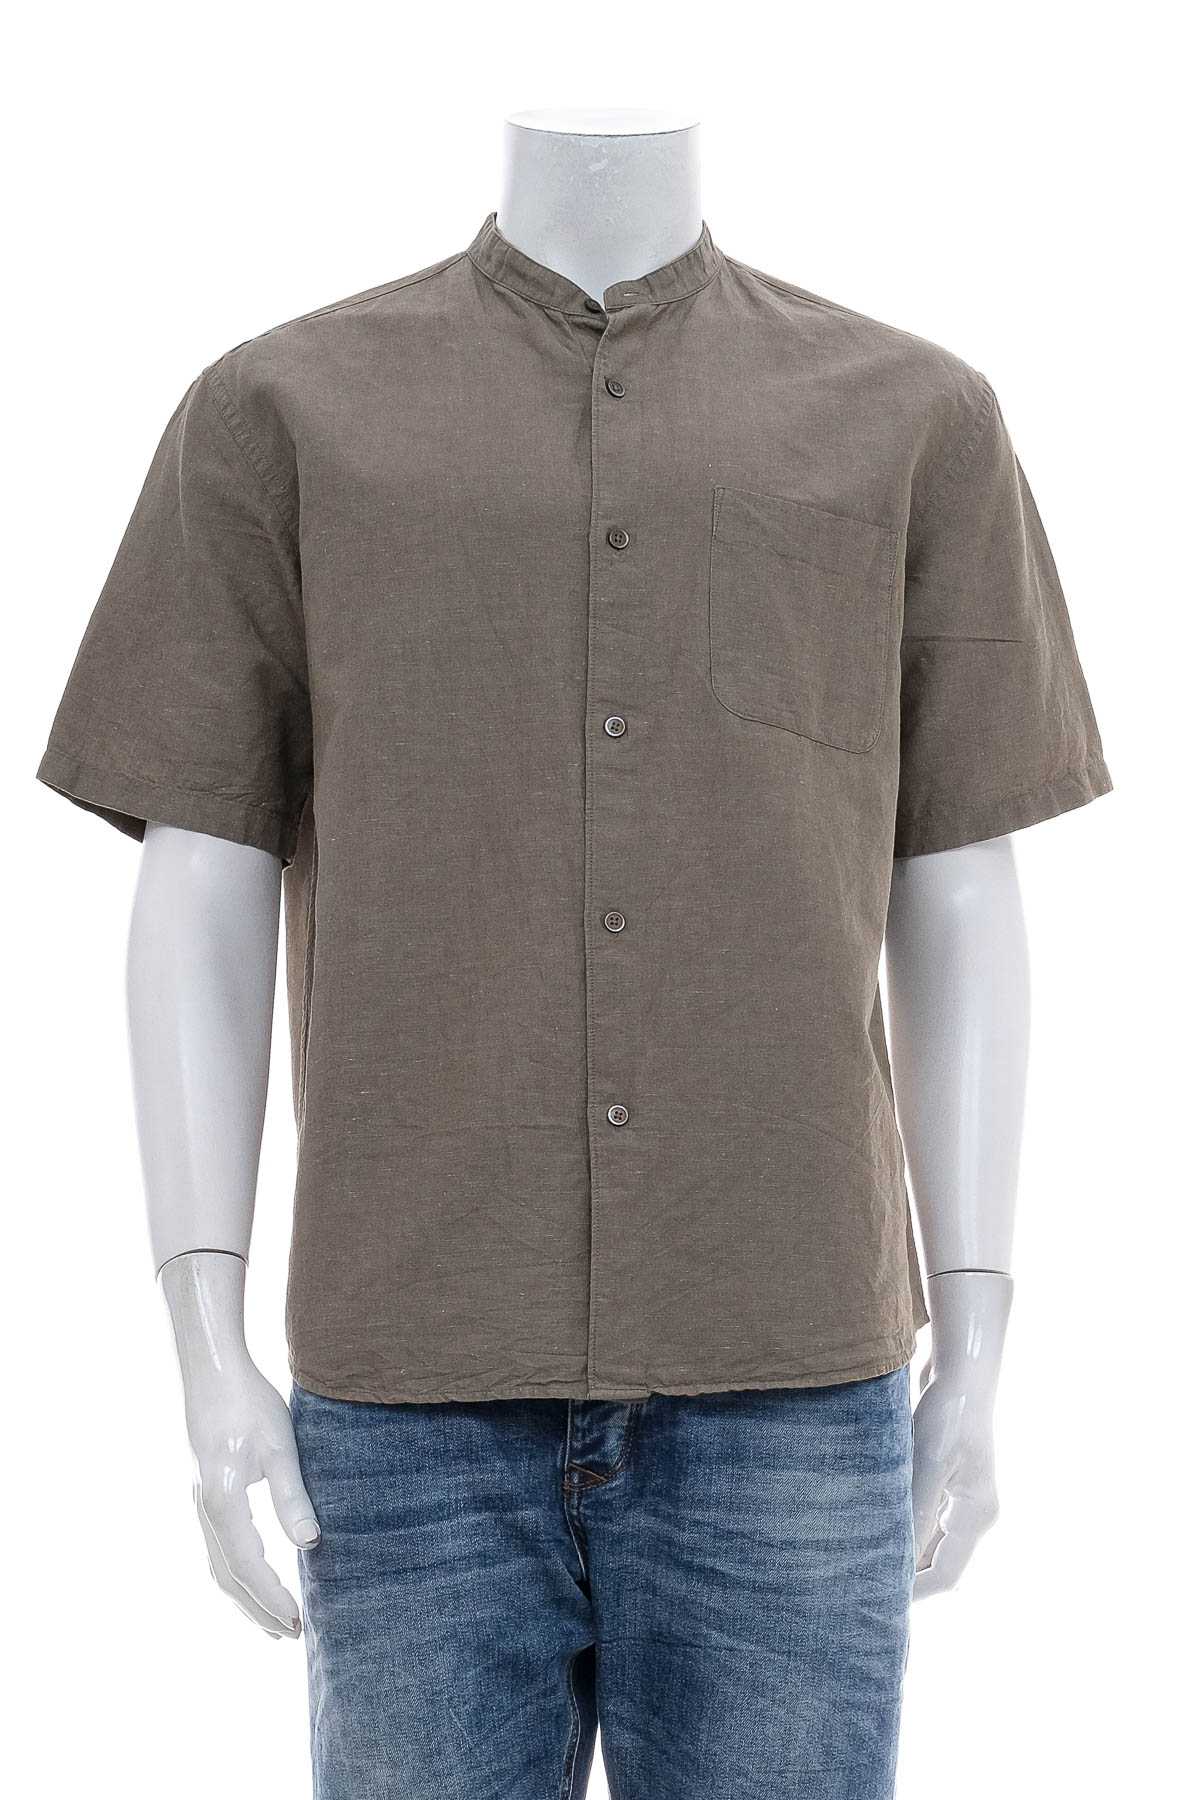 Ανδρικό πουκάμισο - UNIQLO - 0